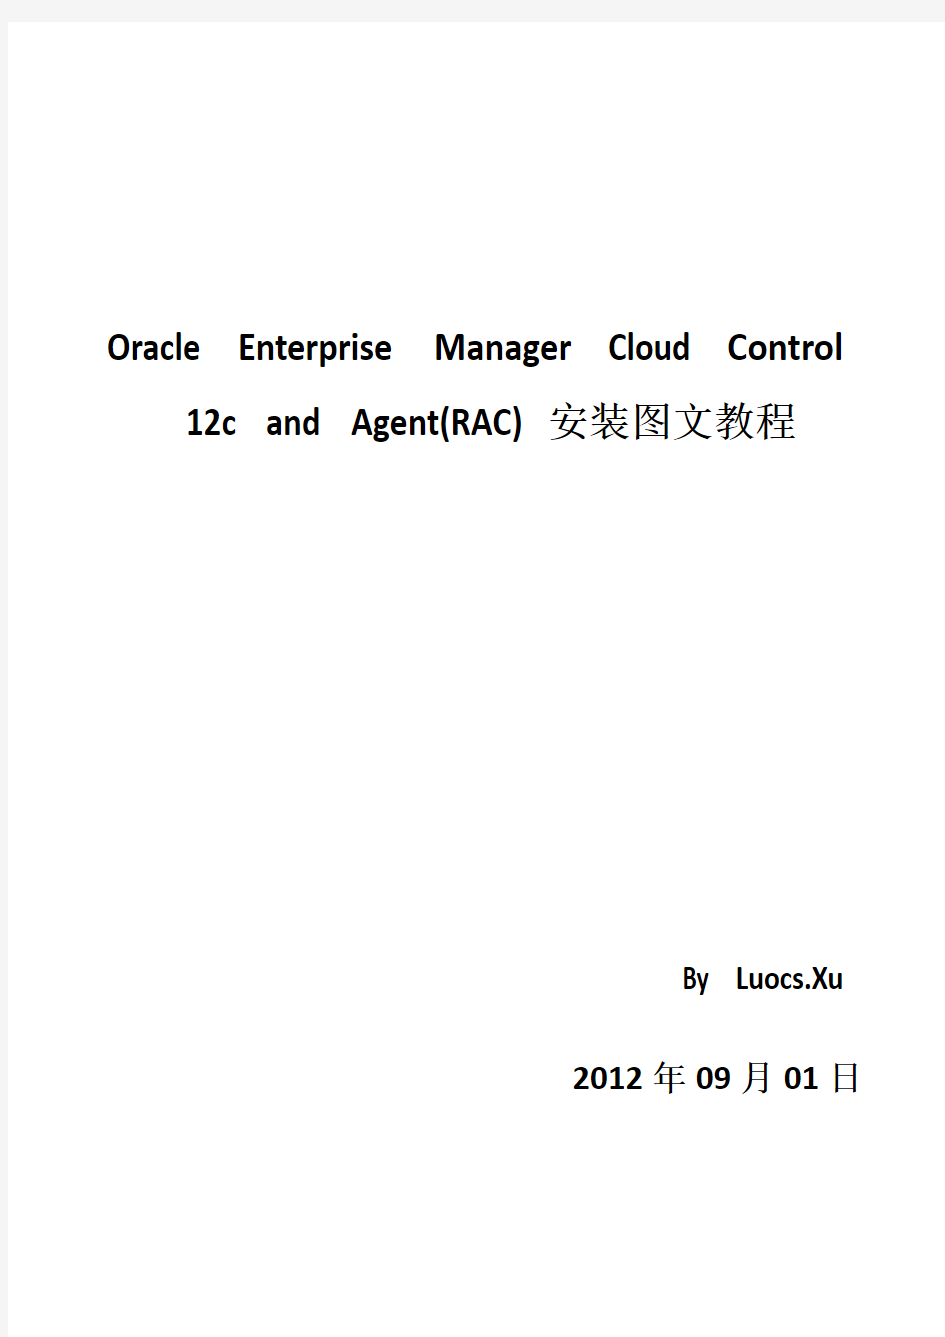 Oracle_Enterprise_Manager_Cloud_Control_12c_&Agent(RAC)安装图文教程(中文)